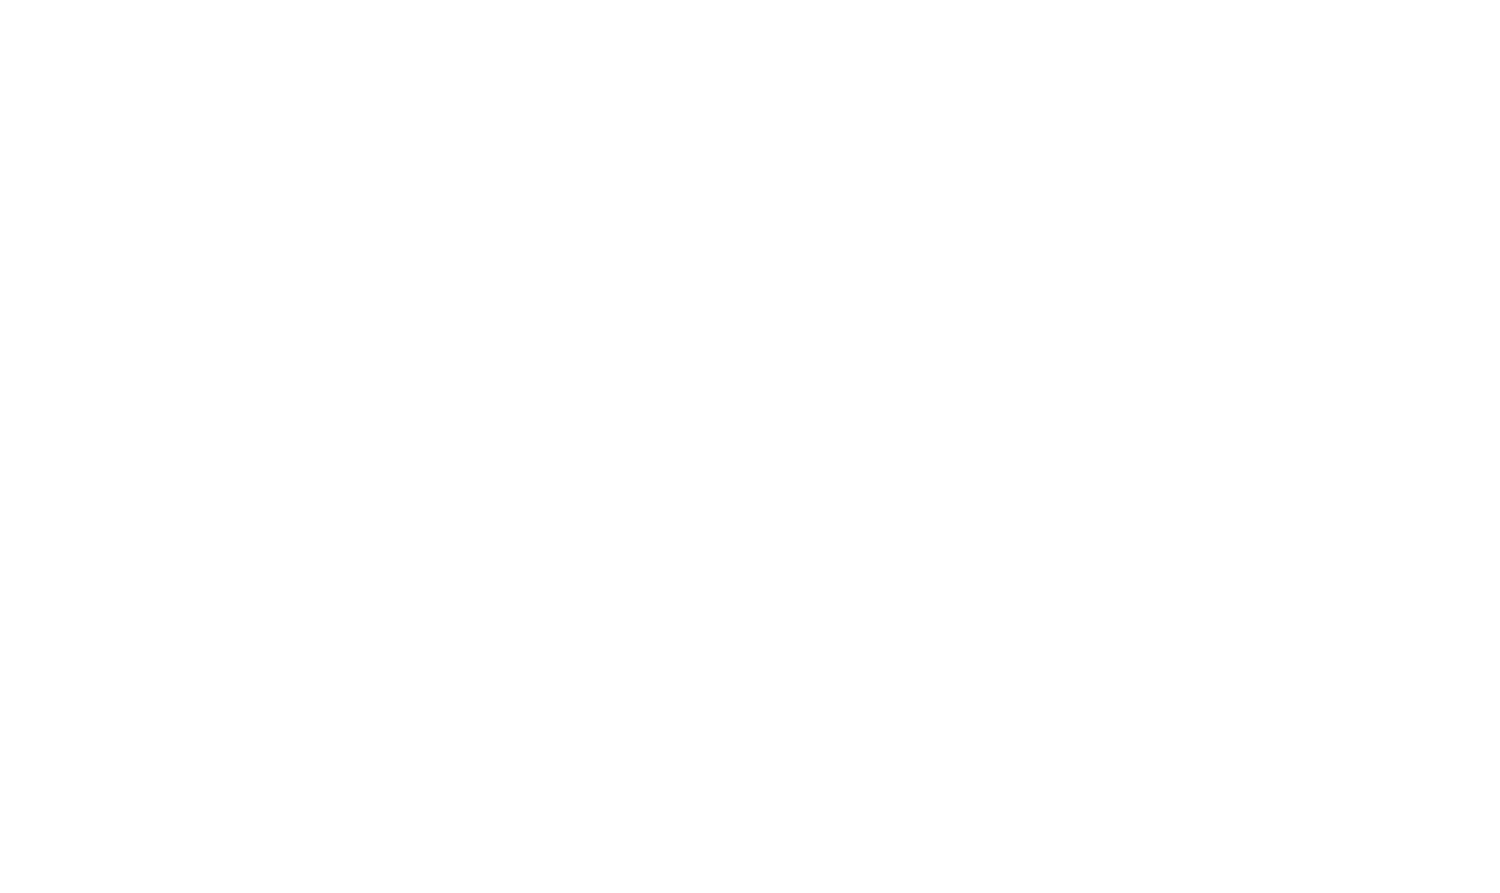 Inclusive belonging